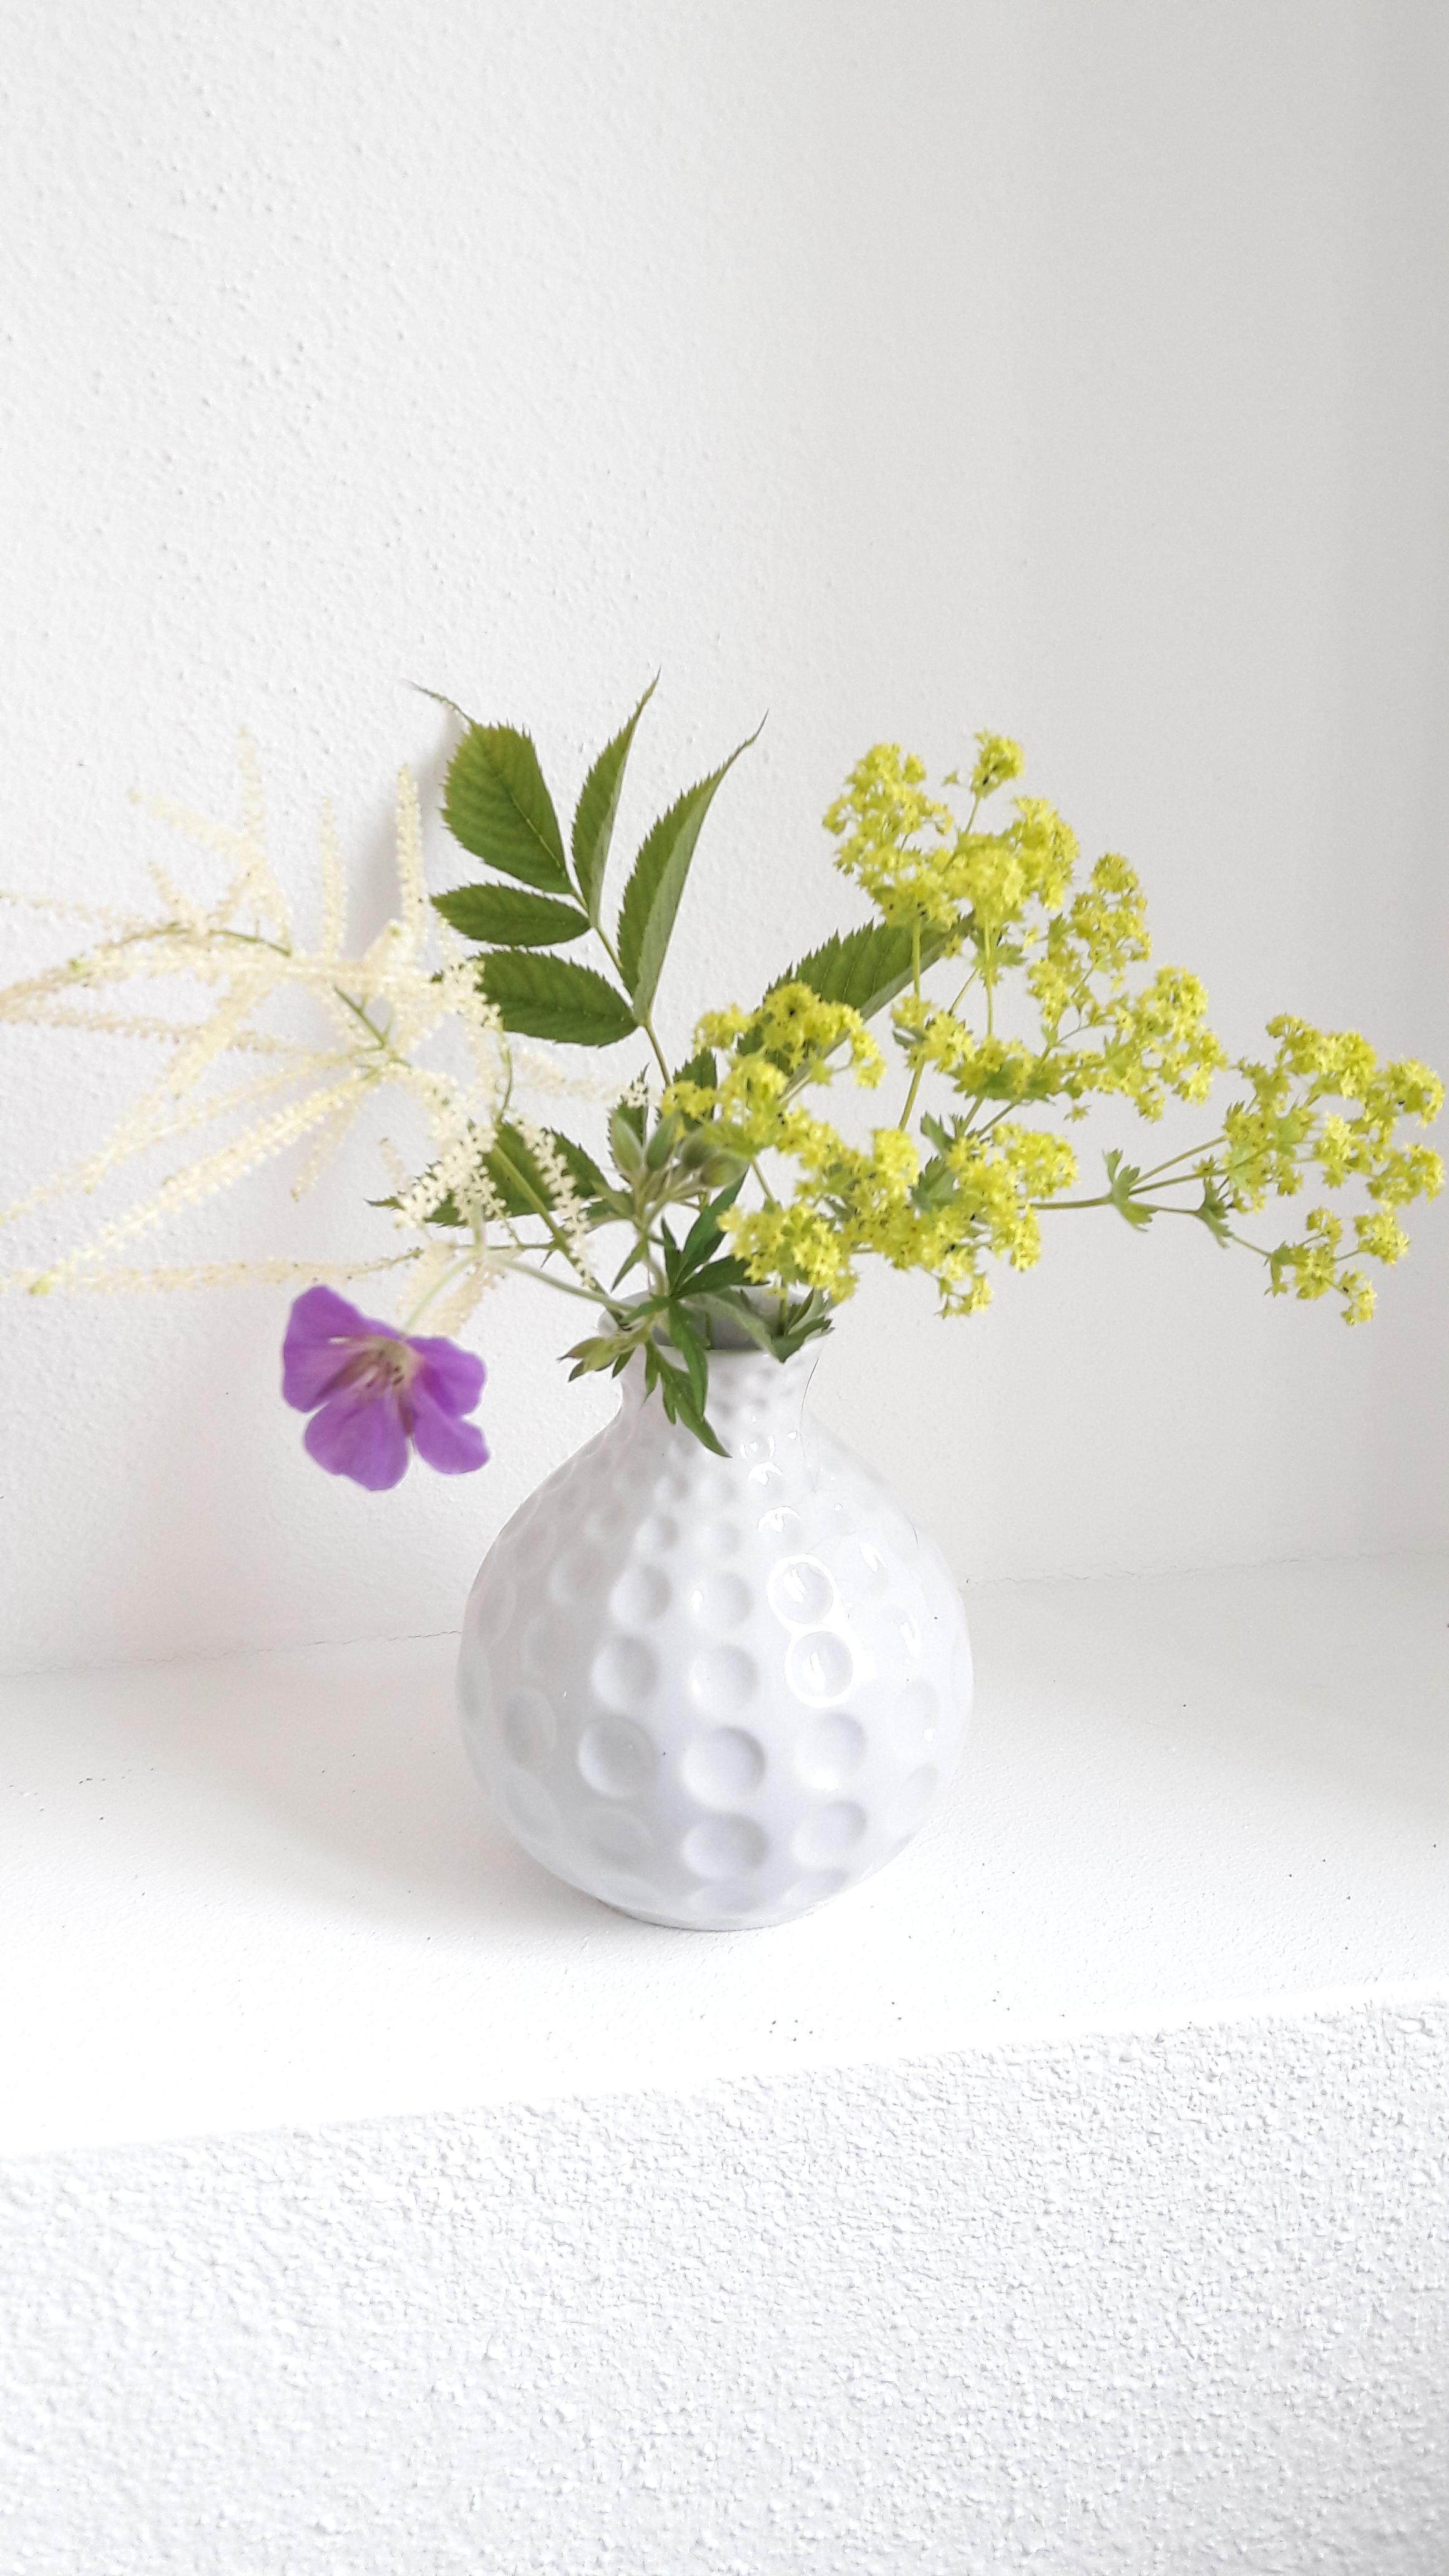 Geißbart, Frauenmantel & mein geliebter Storchschnabel zum #freshflowerfriday
#frühling #strauß #vase 